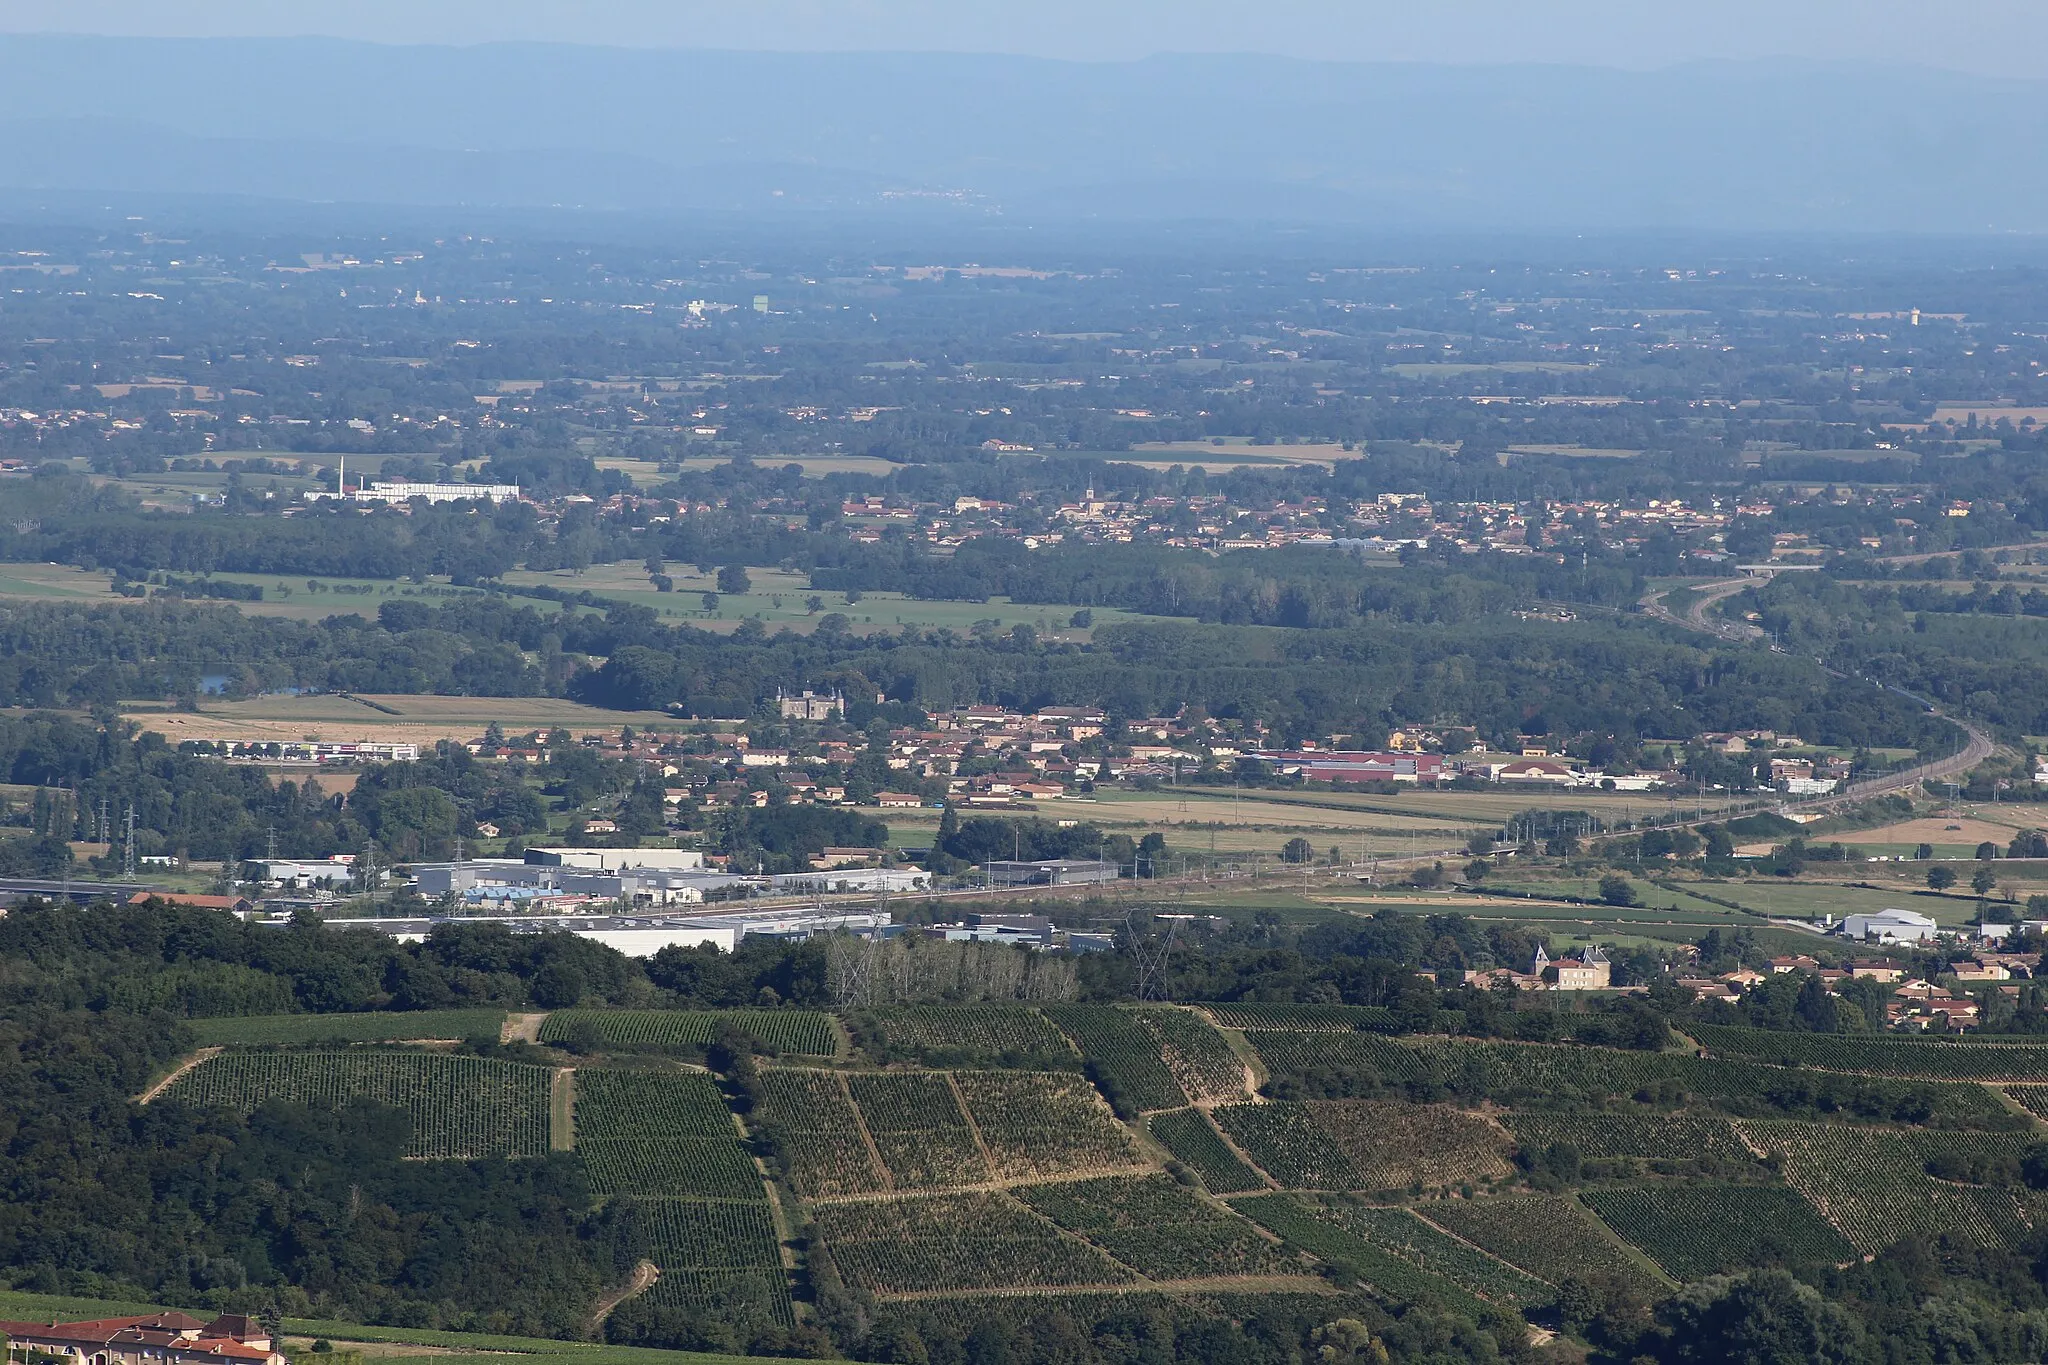 Photo showing: Vue sur la Bresse et le Mâconnais, plus précisément Varennes-lès-Mâcon où le château de Varennes est visible.
En second plan, Grièges et sa laiterie sont visibles.
La ligne LGV Sud-Est traverse devant Varennes.

La photo a été prise au sommet de la roche de Solutré.